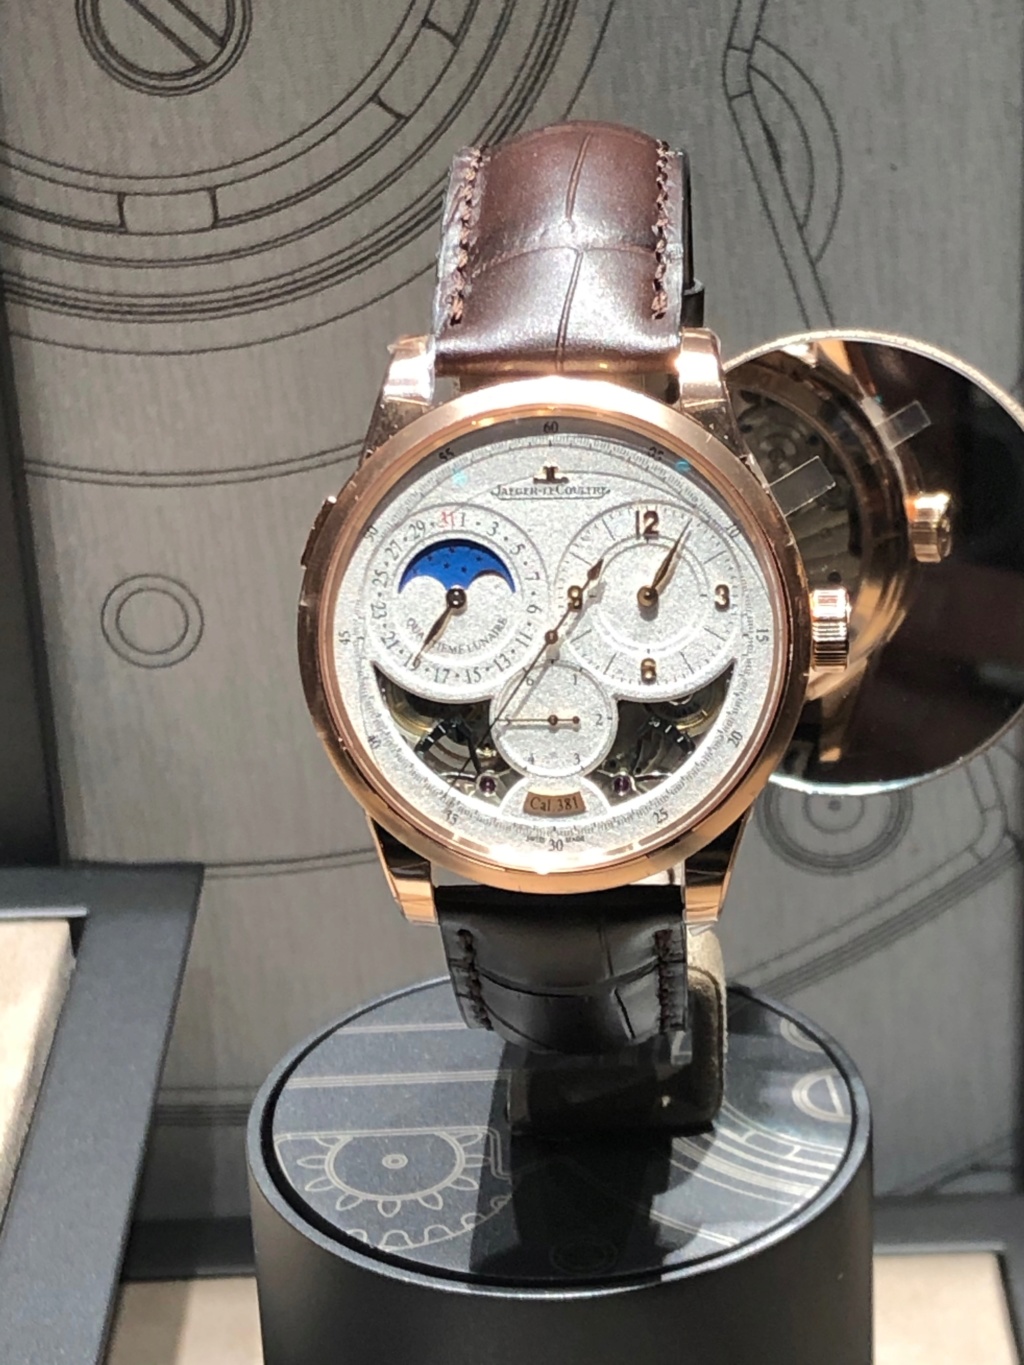 Salon exceptional watches à Prague 19/20 octobre Img_8015